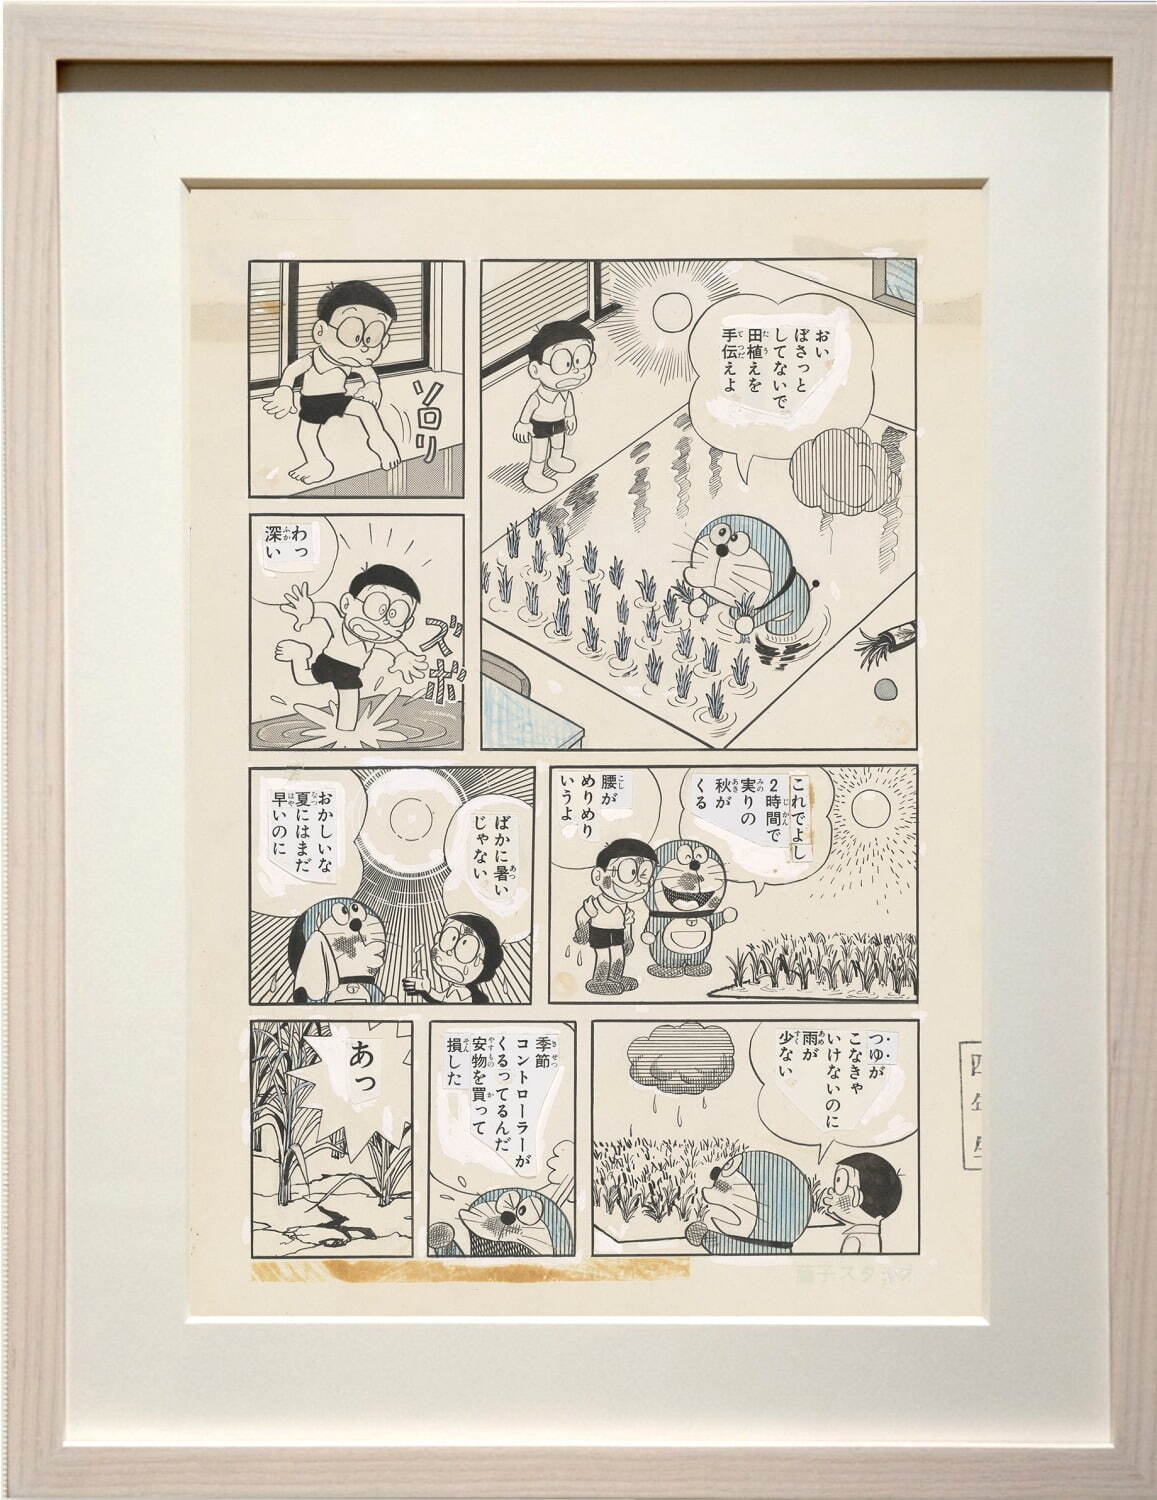 藤子・F・不二雄ミュージアム 10周年記念原画展、『ドラえもん』の漫画